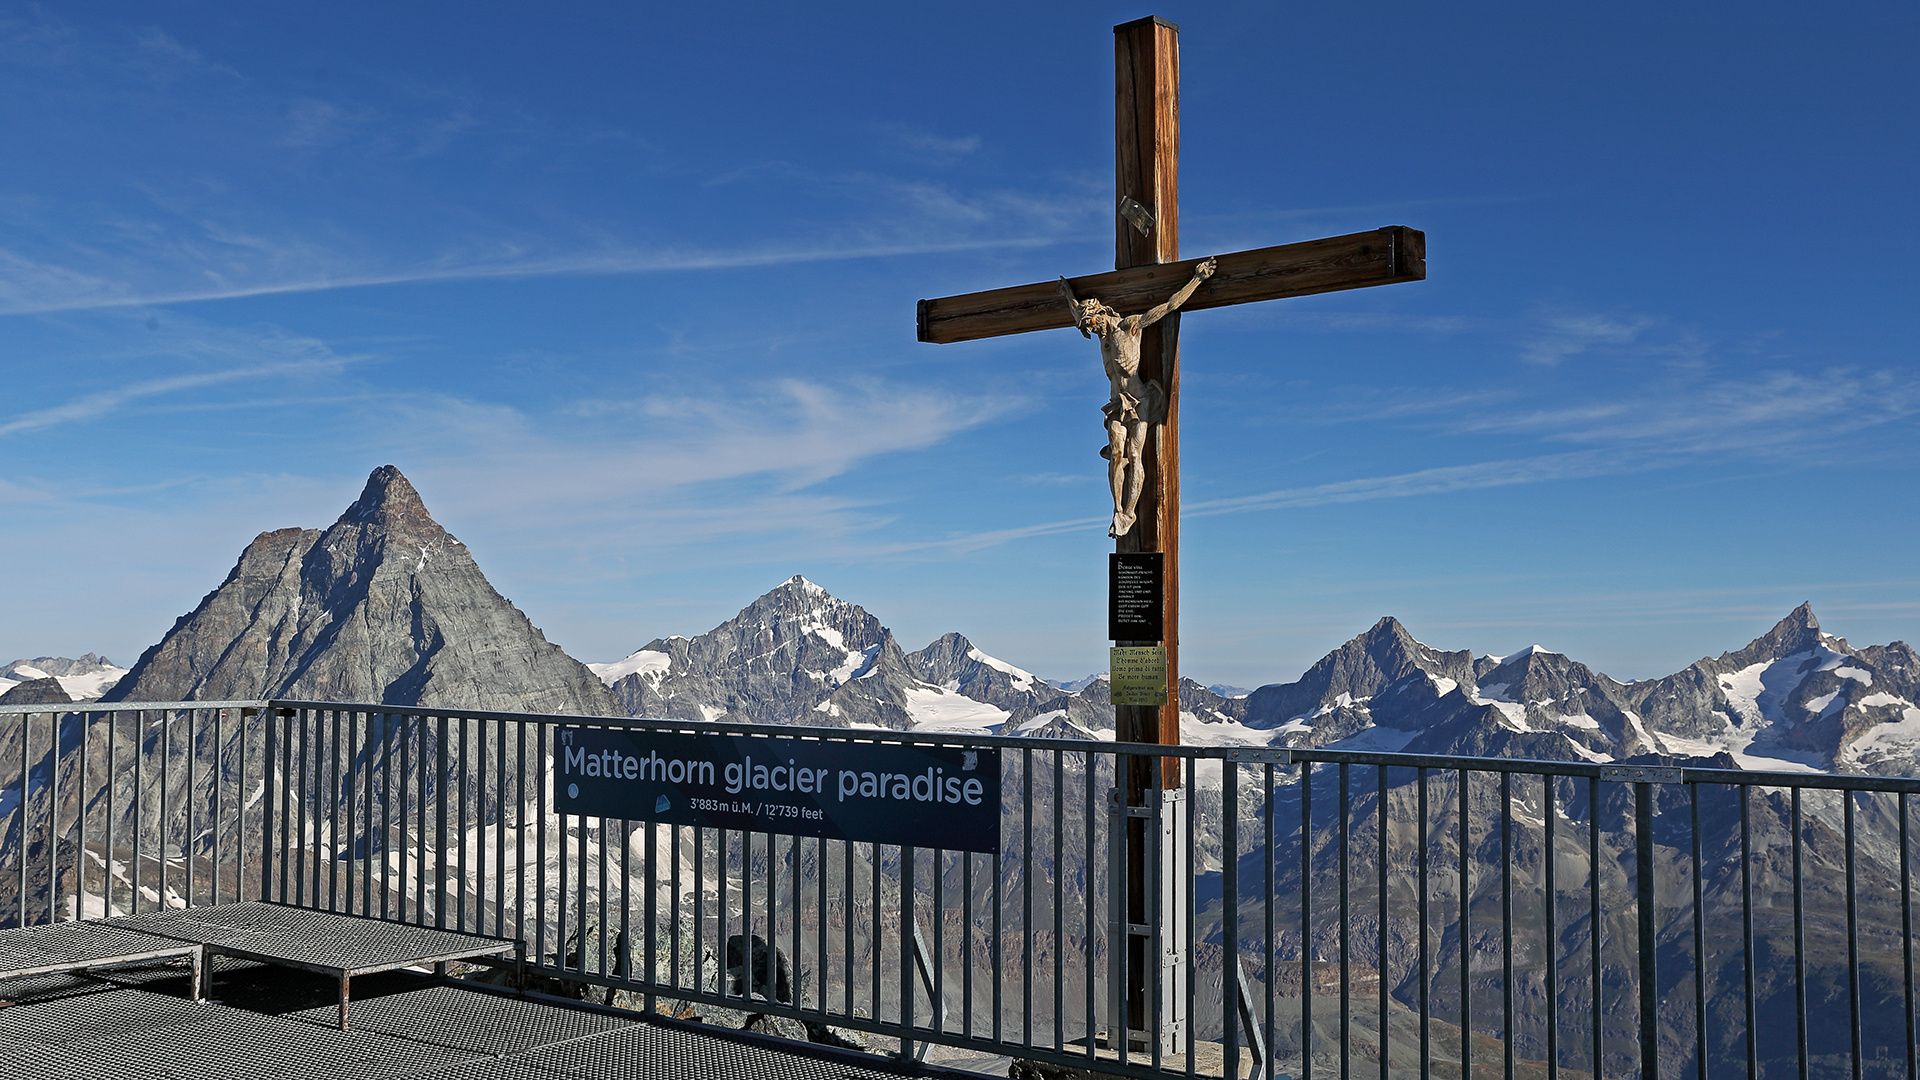 Das Gipfelkreuz auf einem Berg soll jeden zum "innehalten"  auffordern...